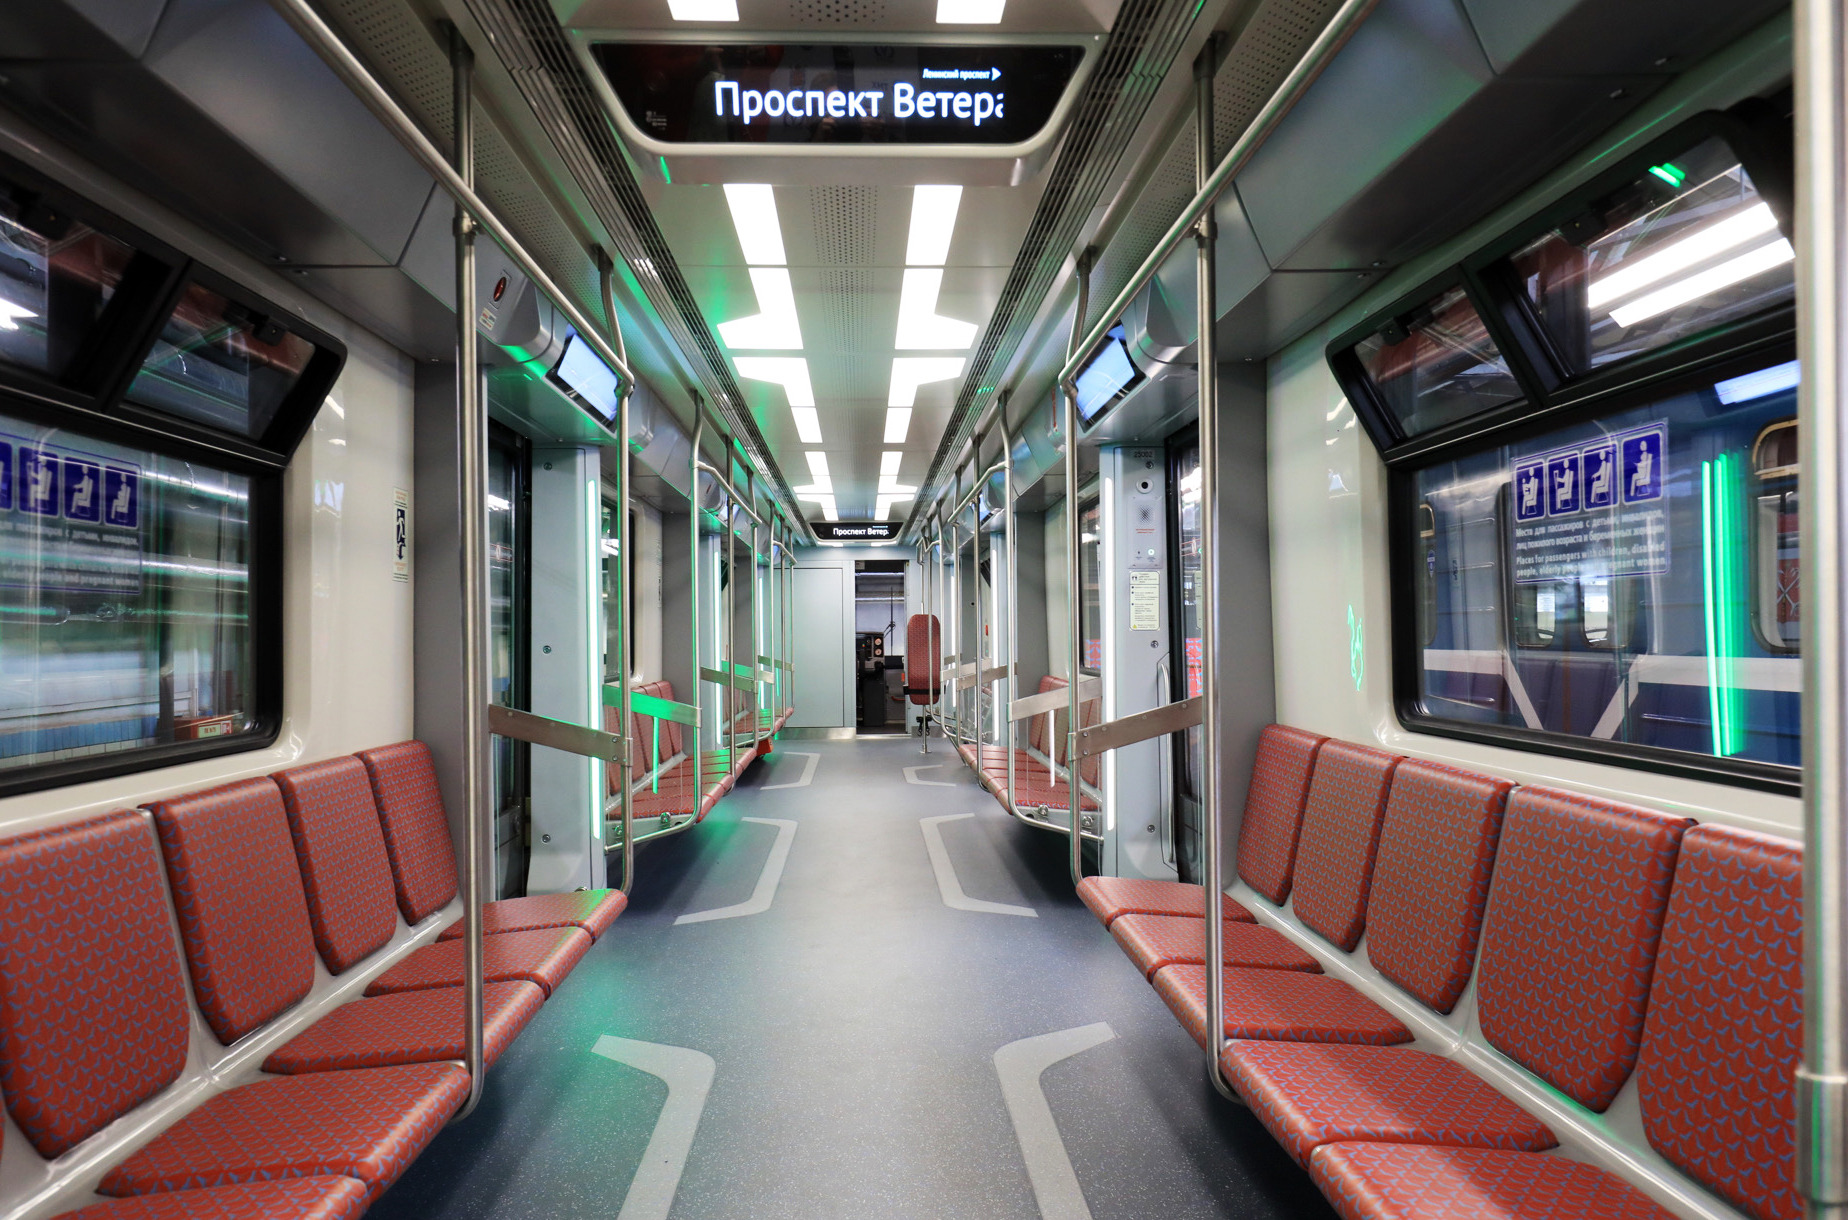 Interior of the Baltiets metro train